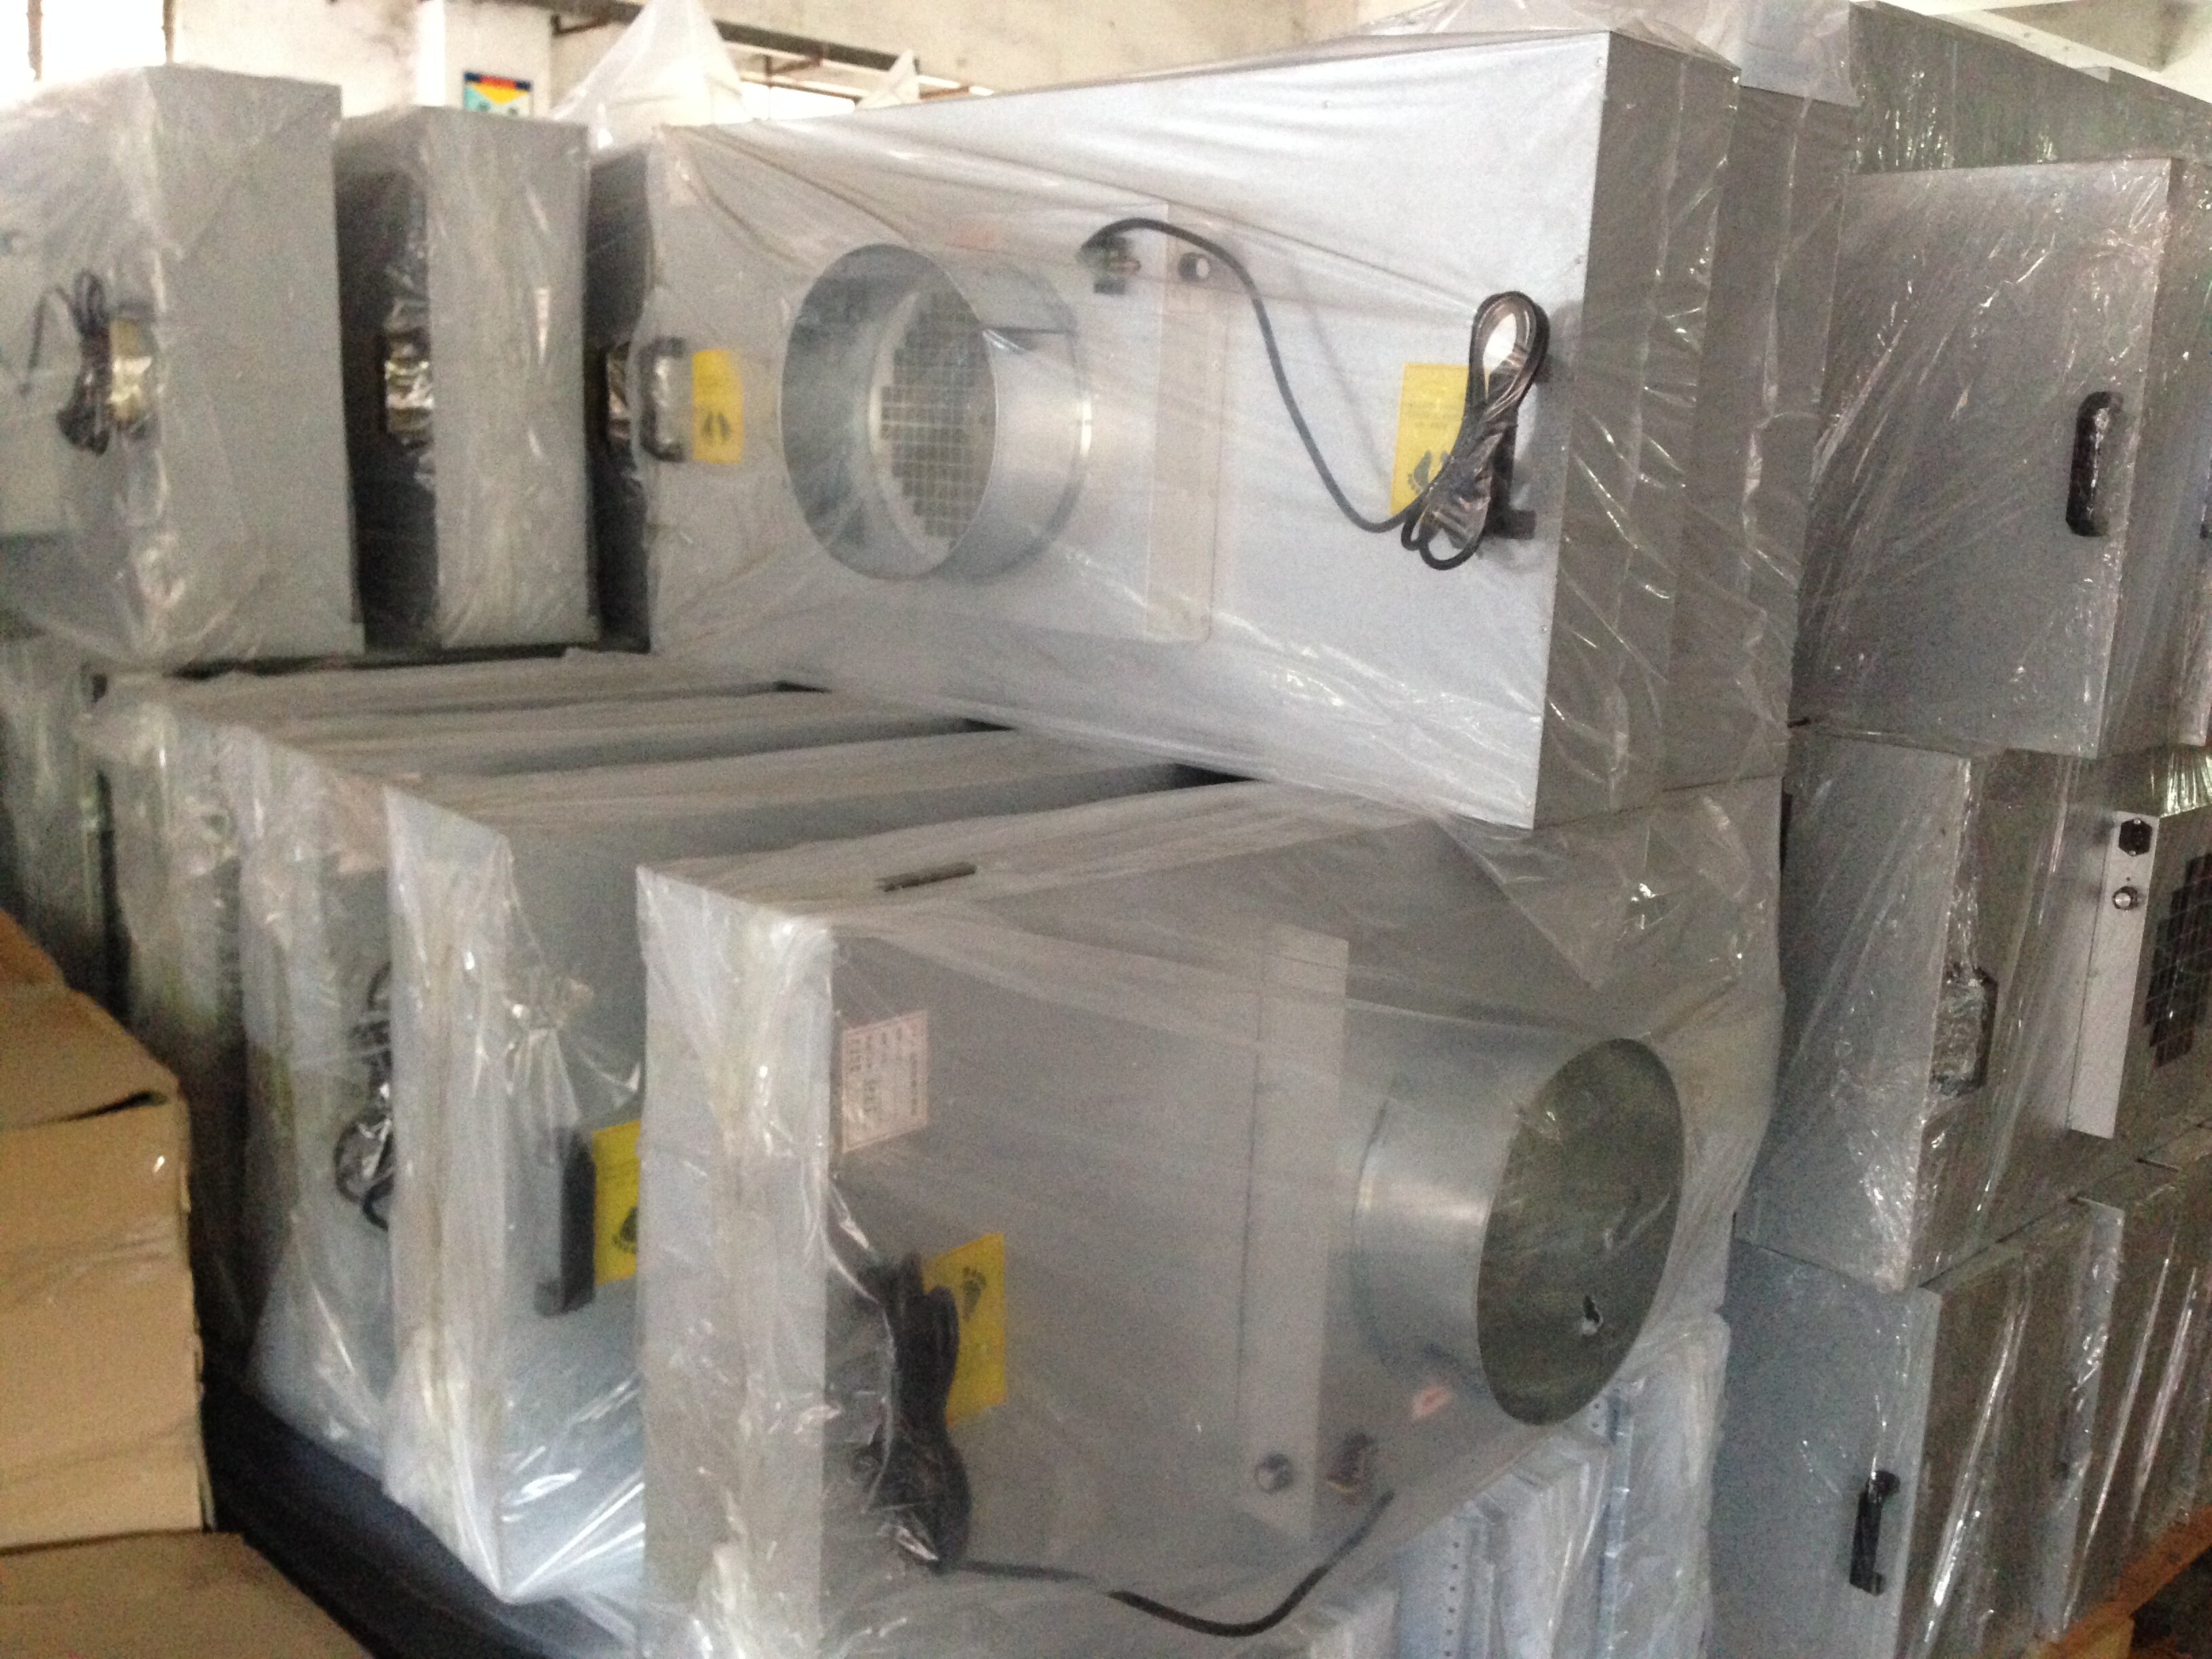  Unidad de filtro de ventilador FFU para un taller sin polvo